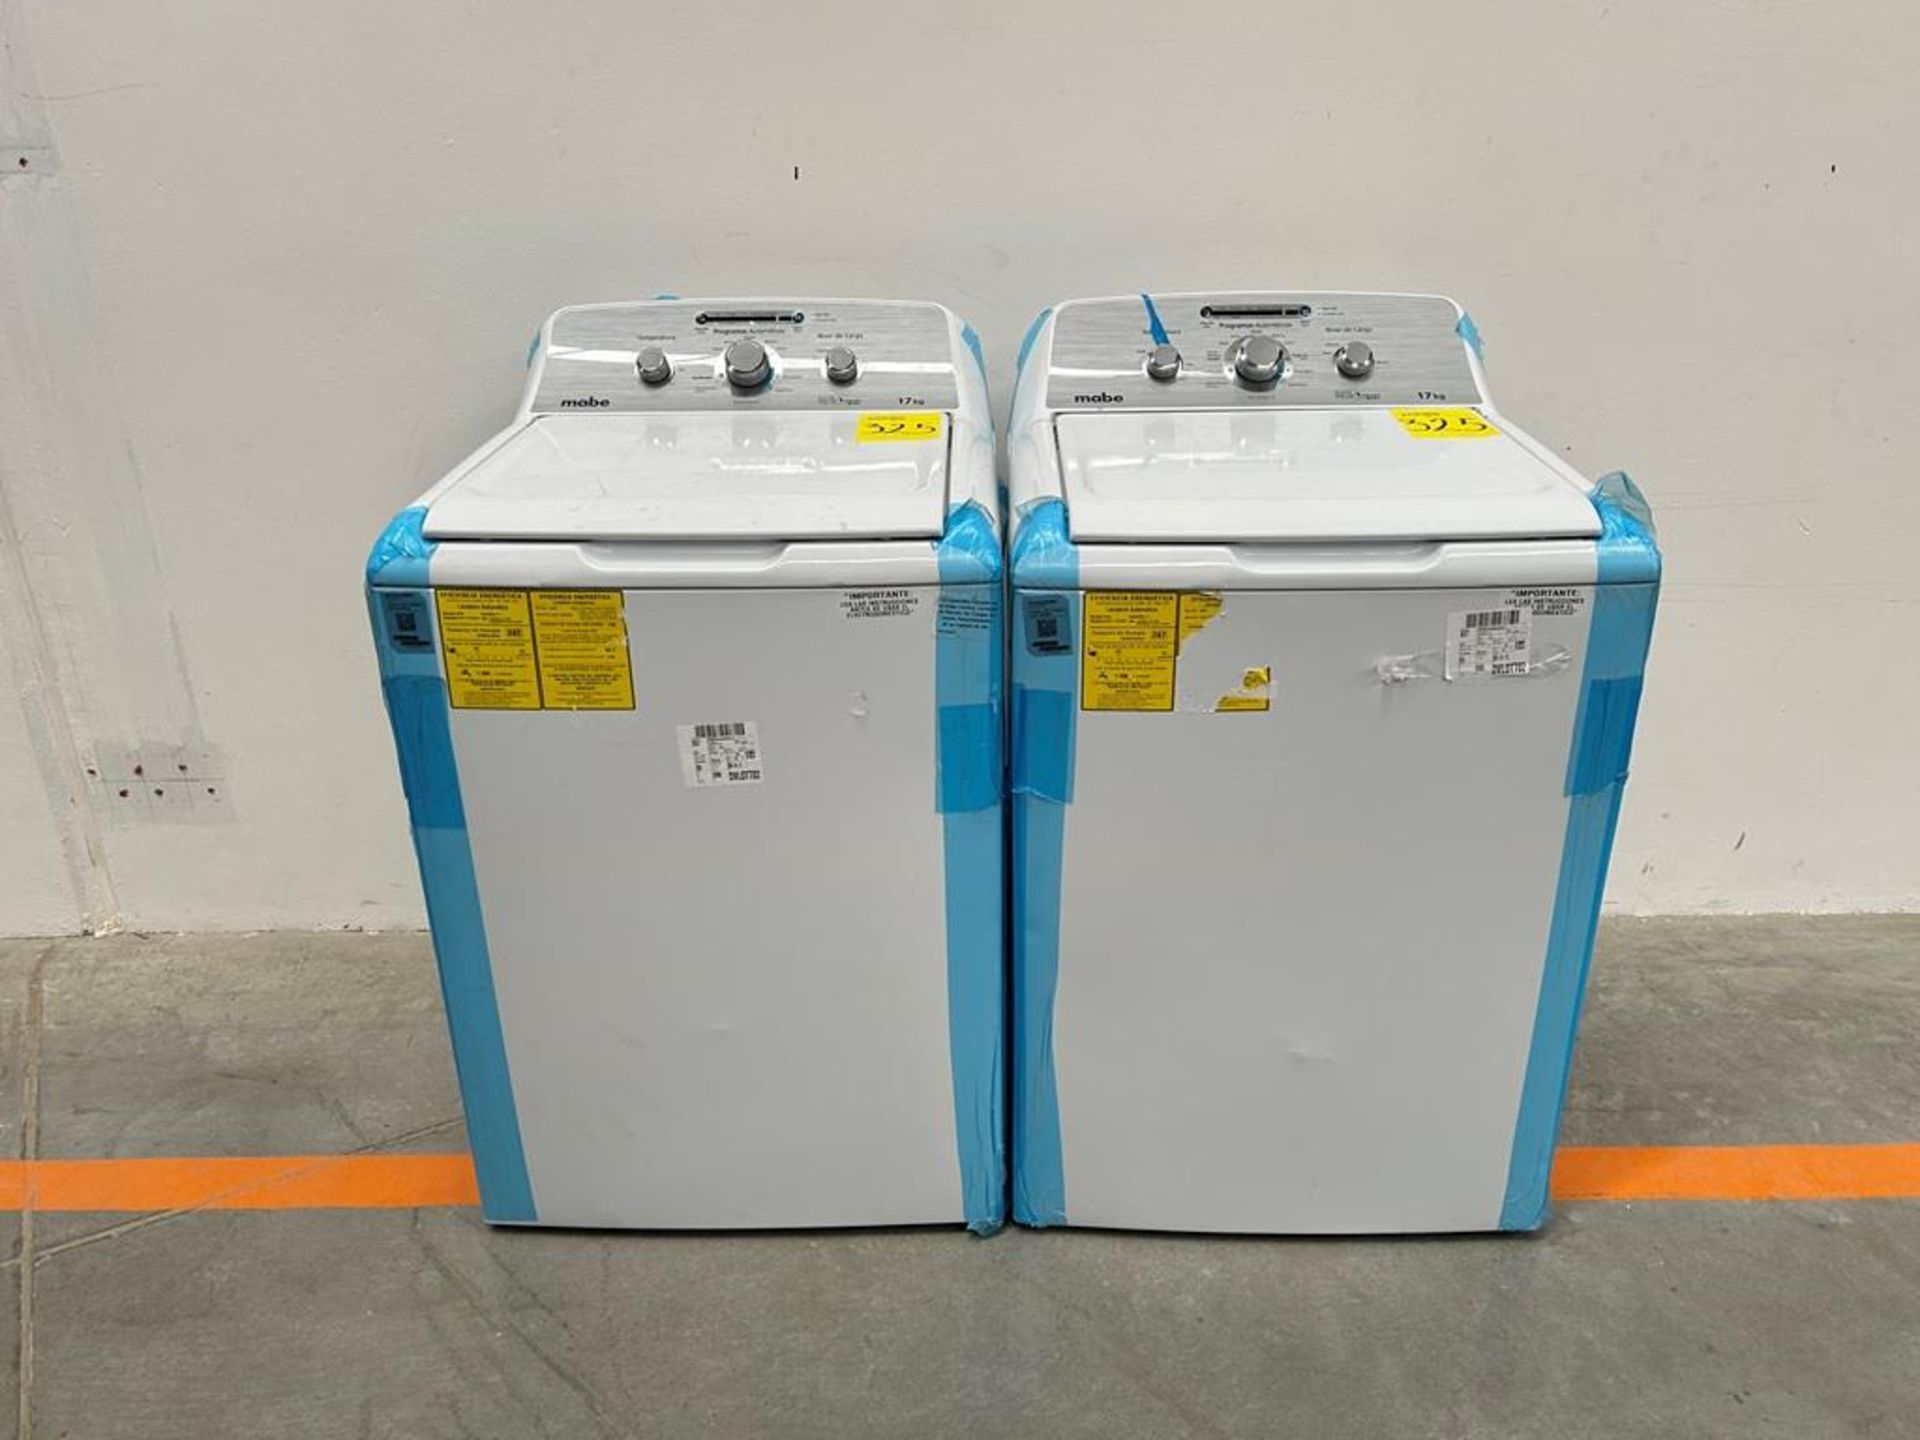 Lote de 2 lavadoras contiene: 1 Lavadora de 17 KG Marca MABE, Modelo LMA77113CBAB04, Serie S91210,